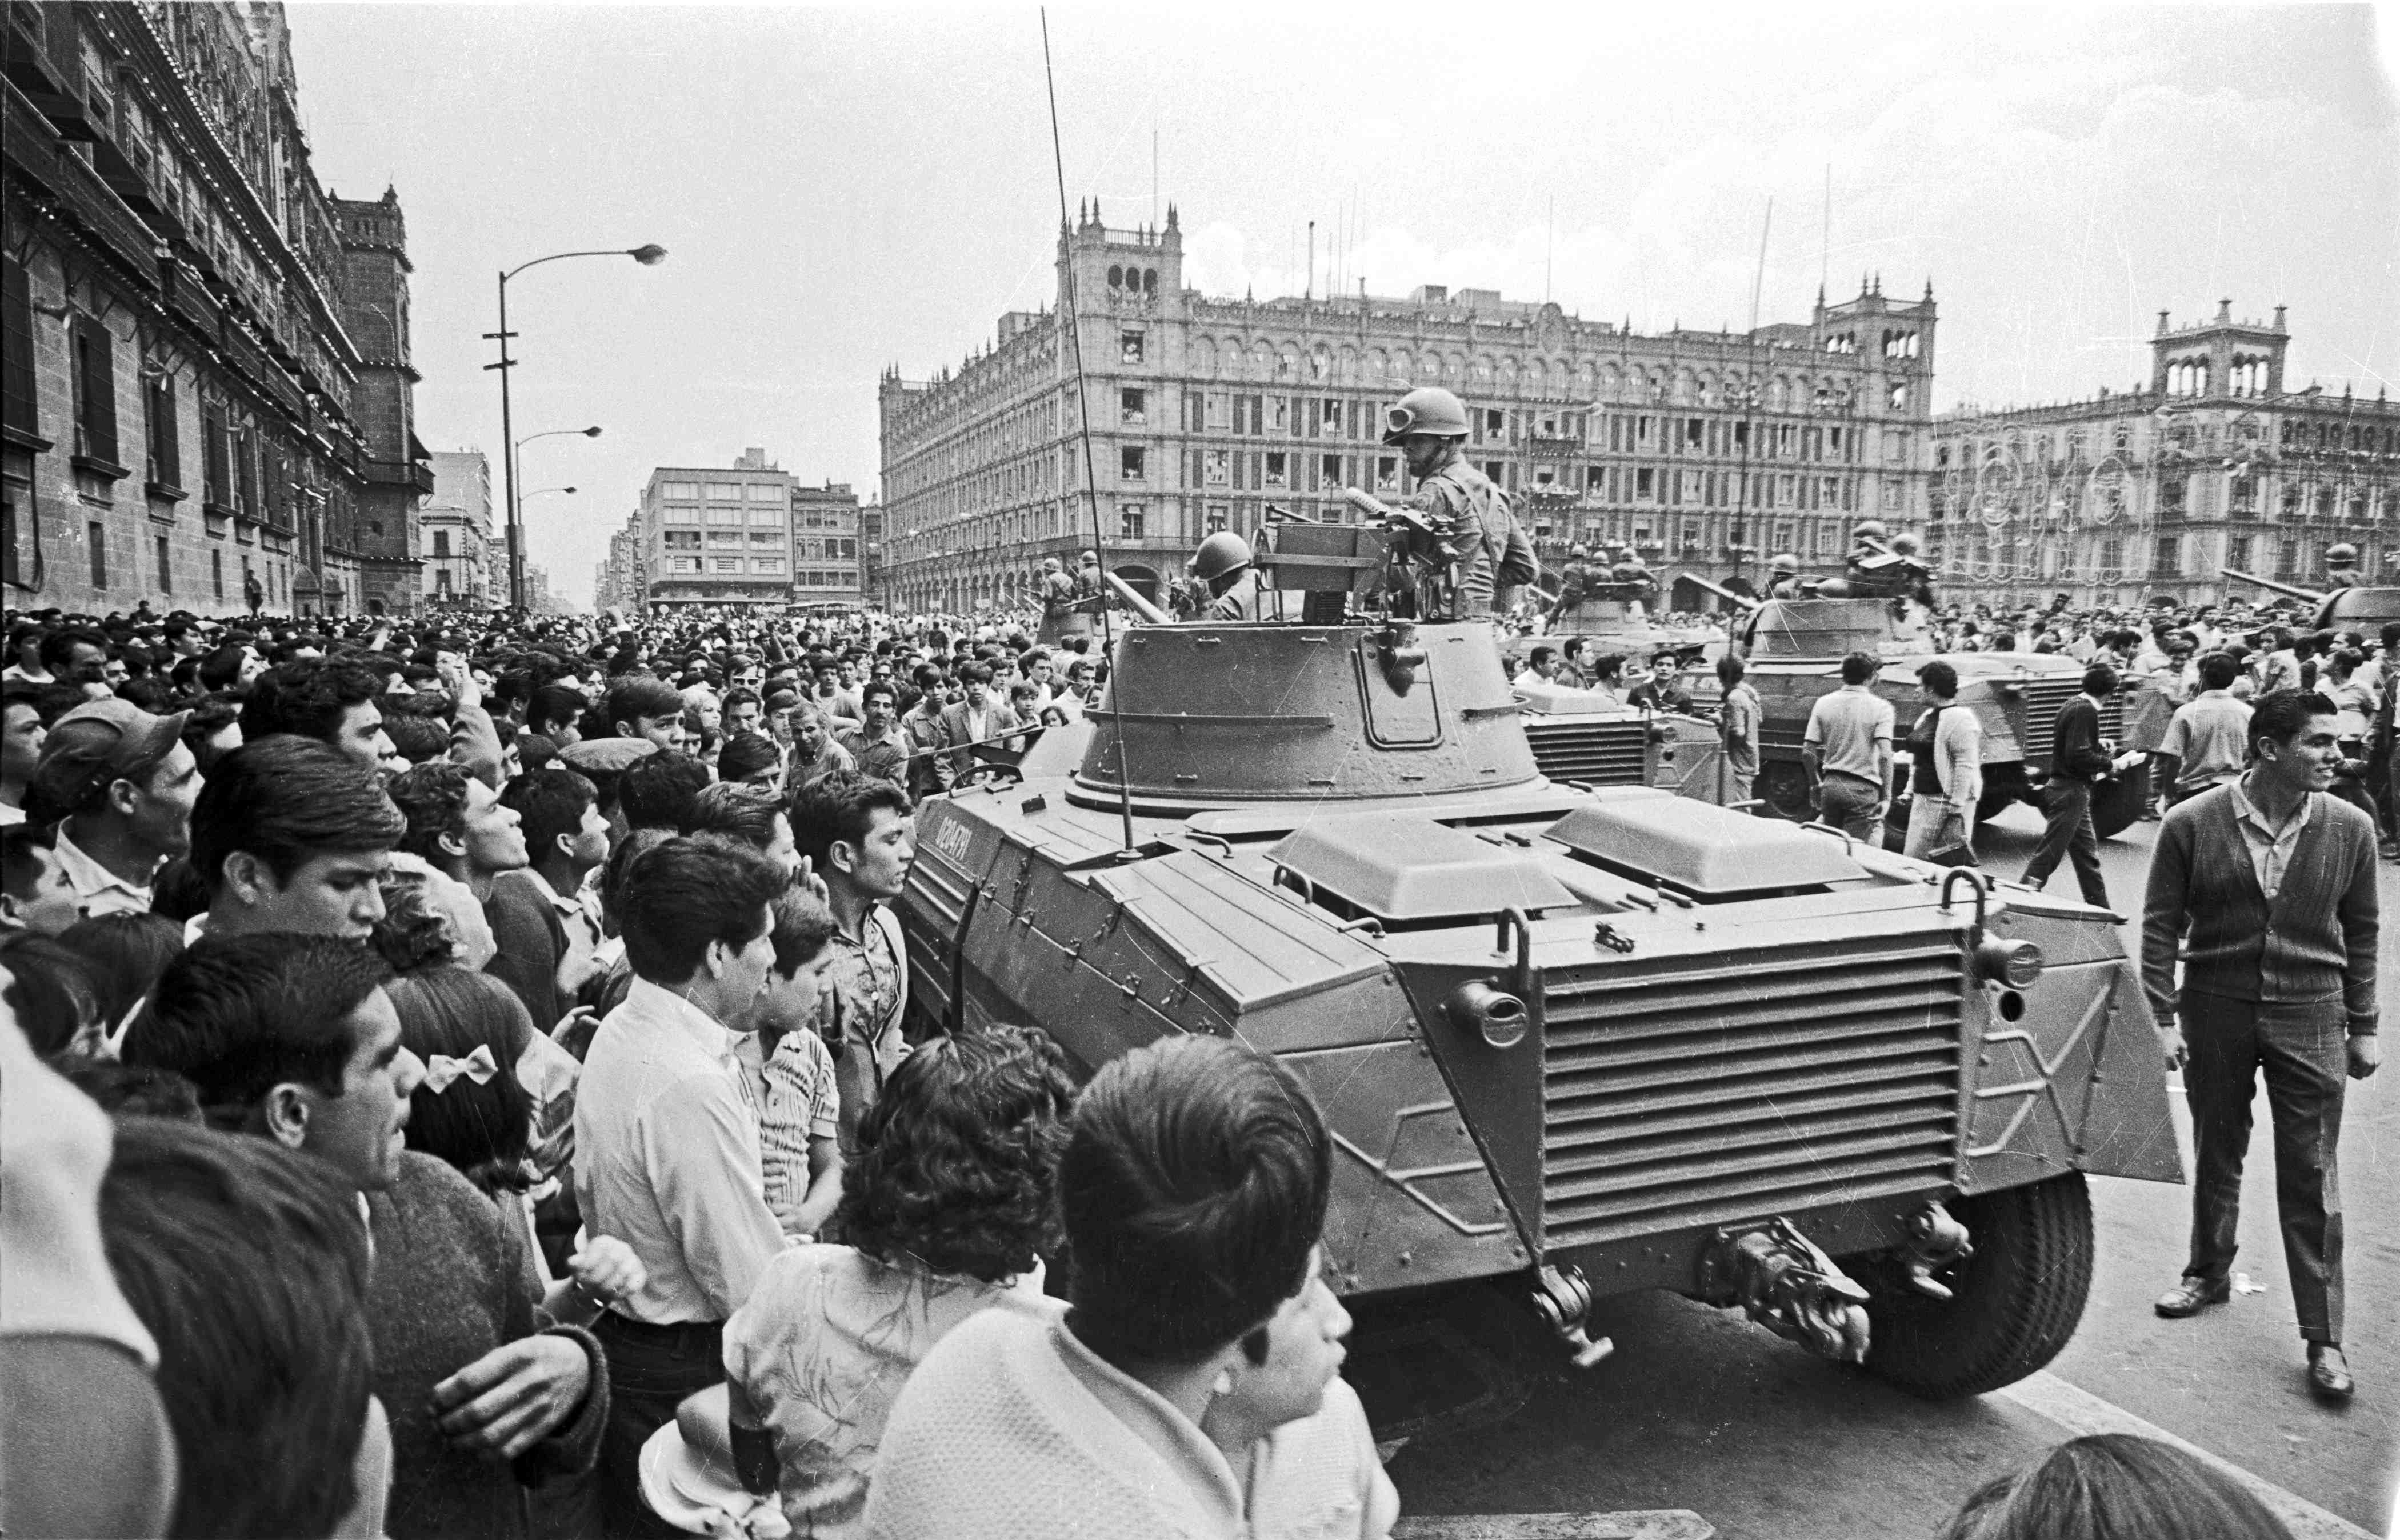 Le 2 octobre 1968, le gouvernement mexicain envoie l'armée pour réprimer une manifestations étudiants. Des centaines de jeunes mexicains sont tués, blessés ou emprisonnés.